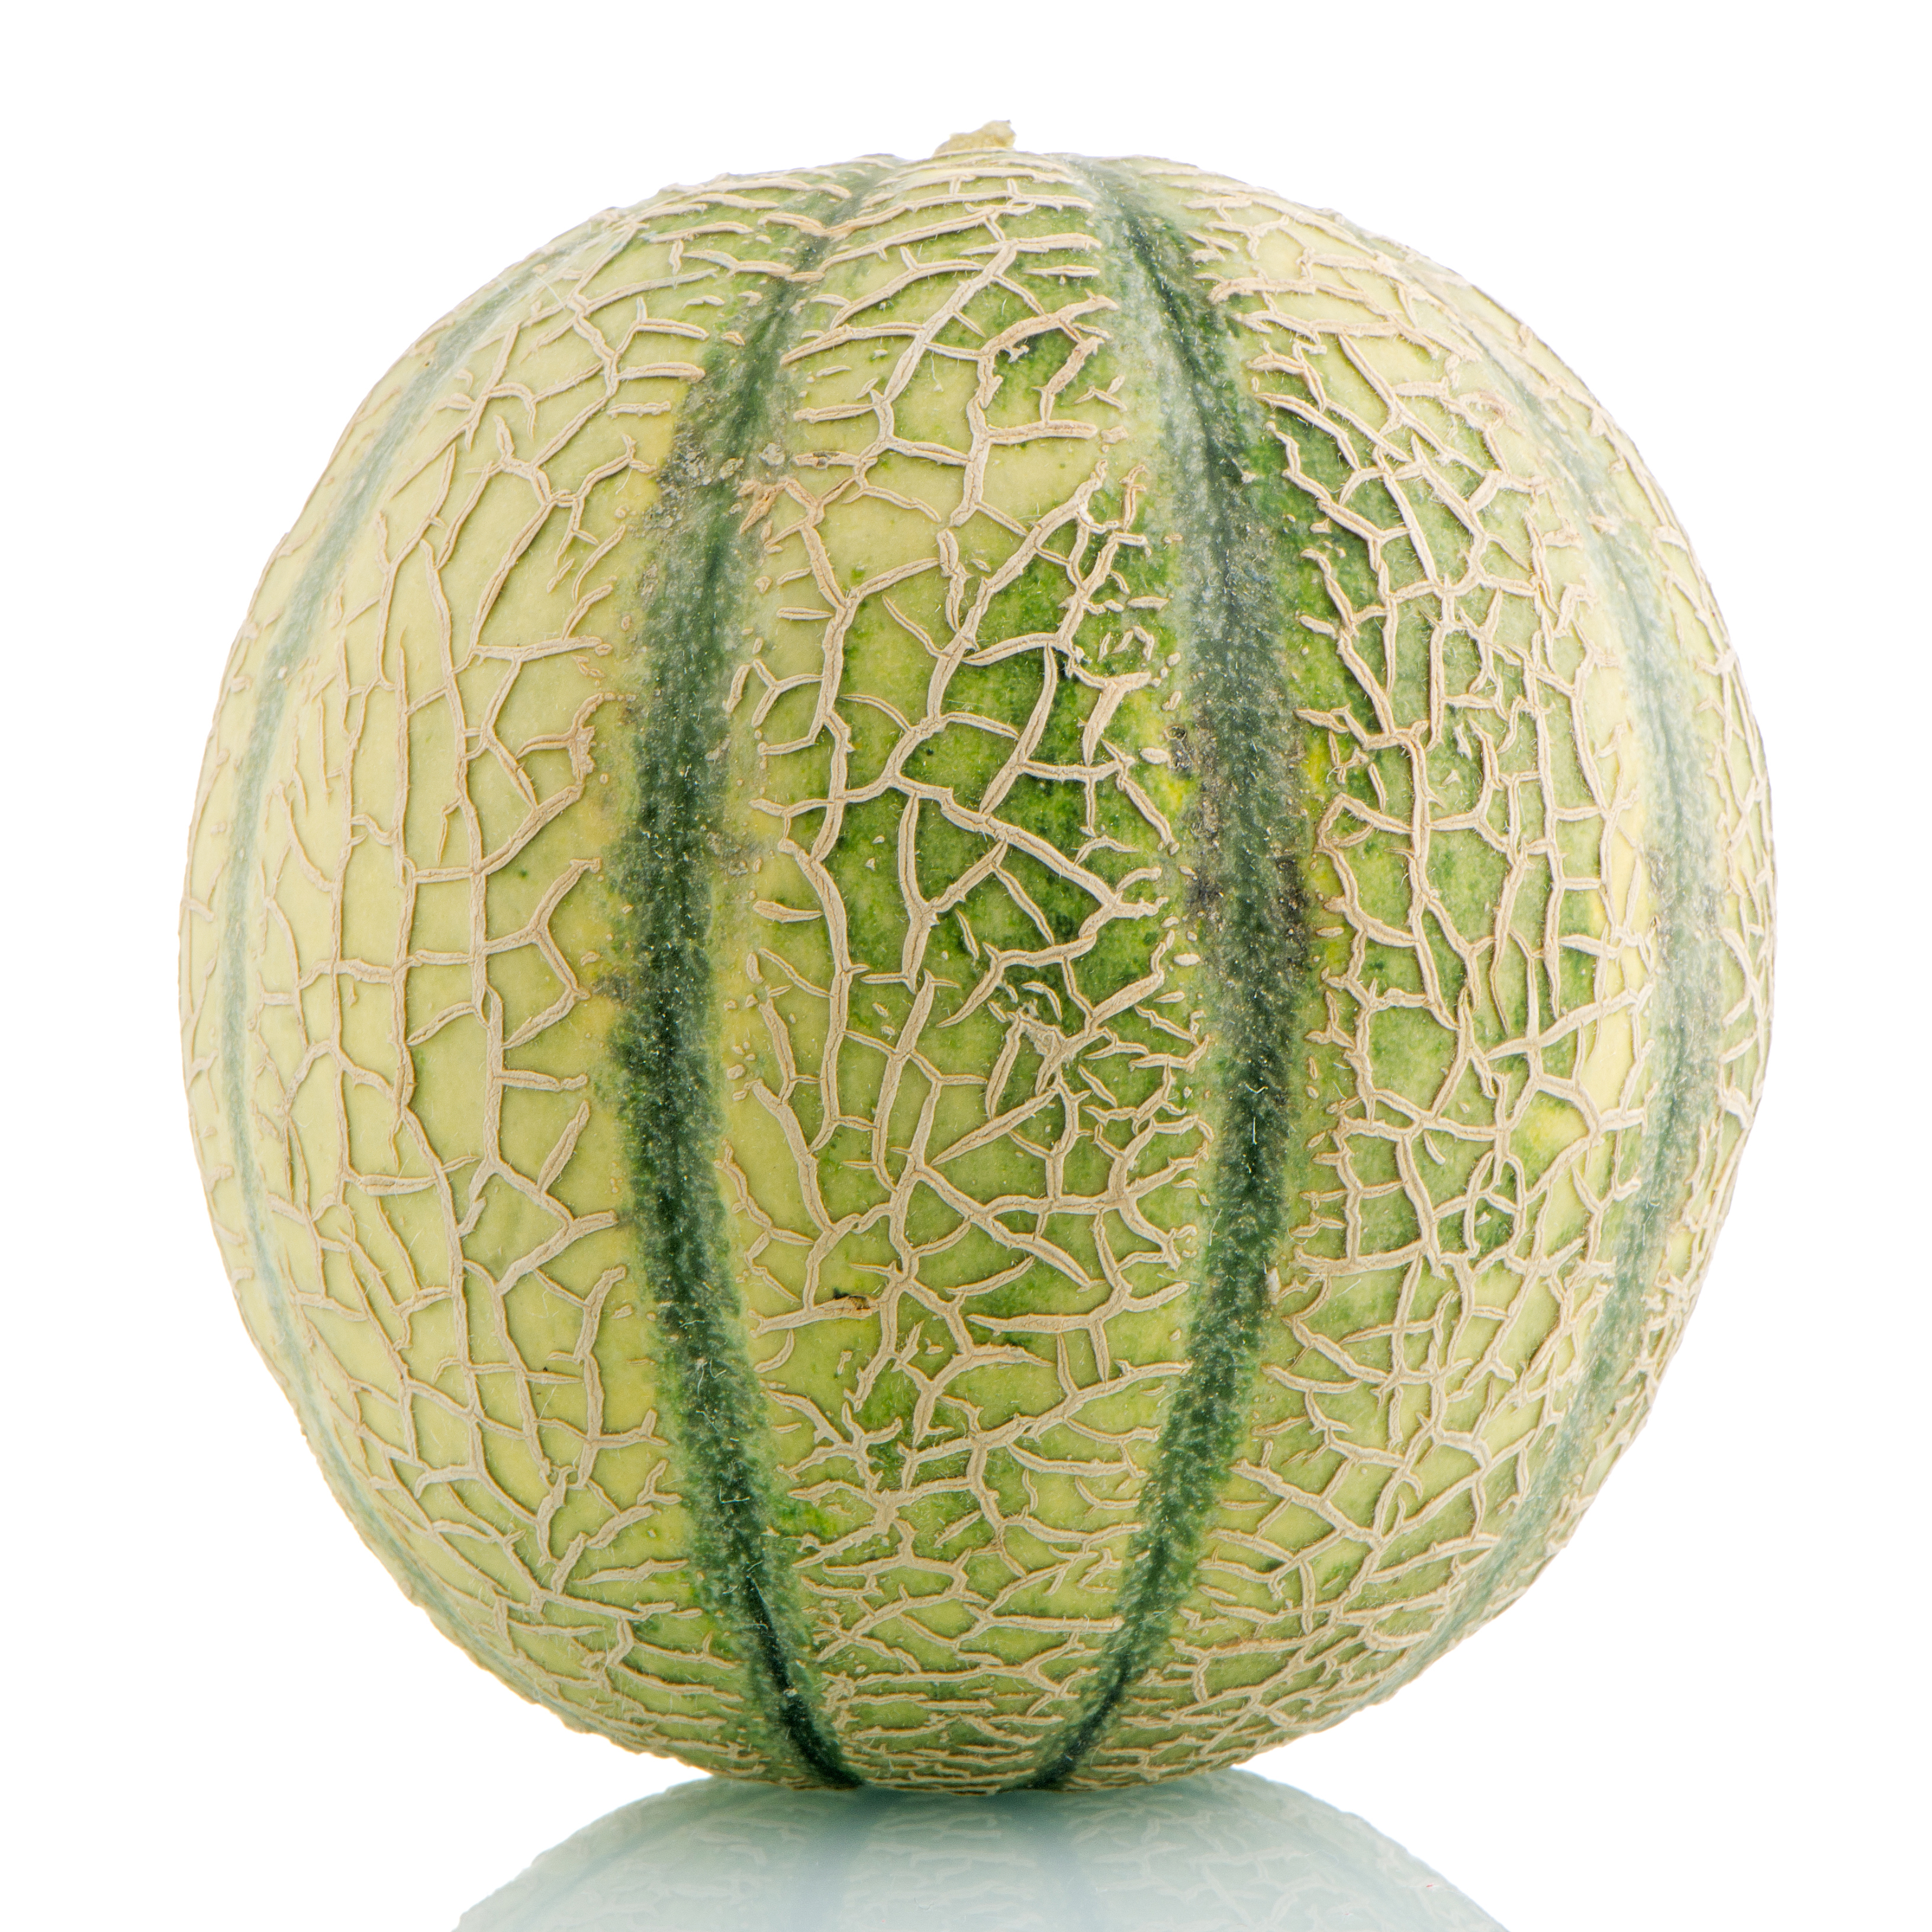 Melon lat. Cucumis melo 